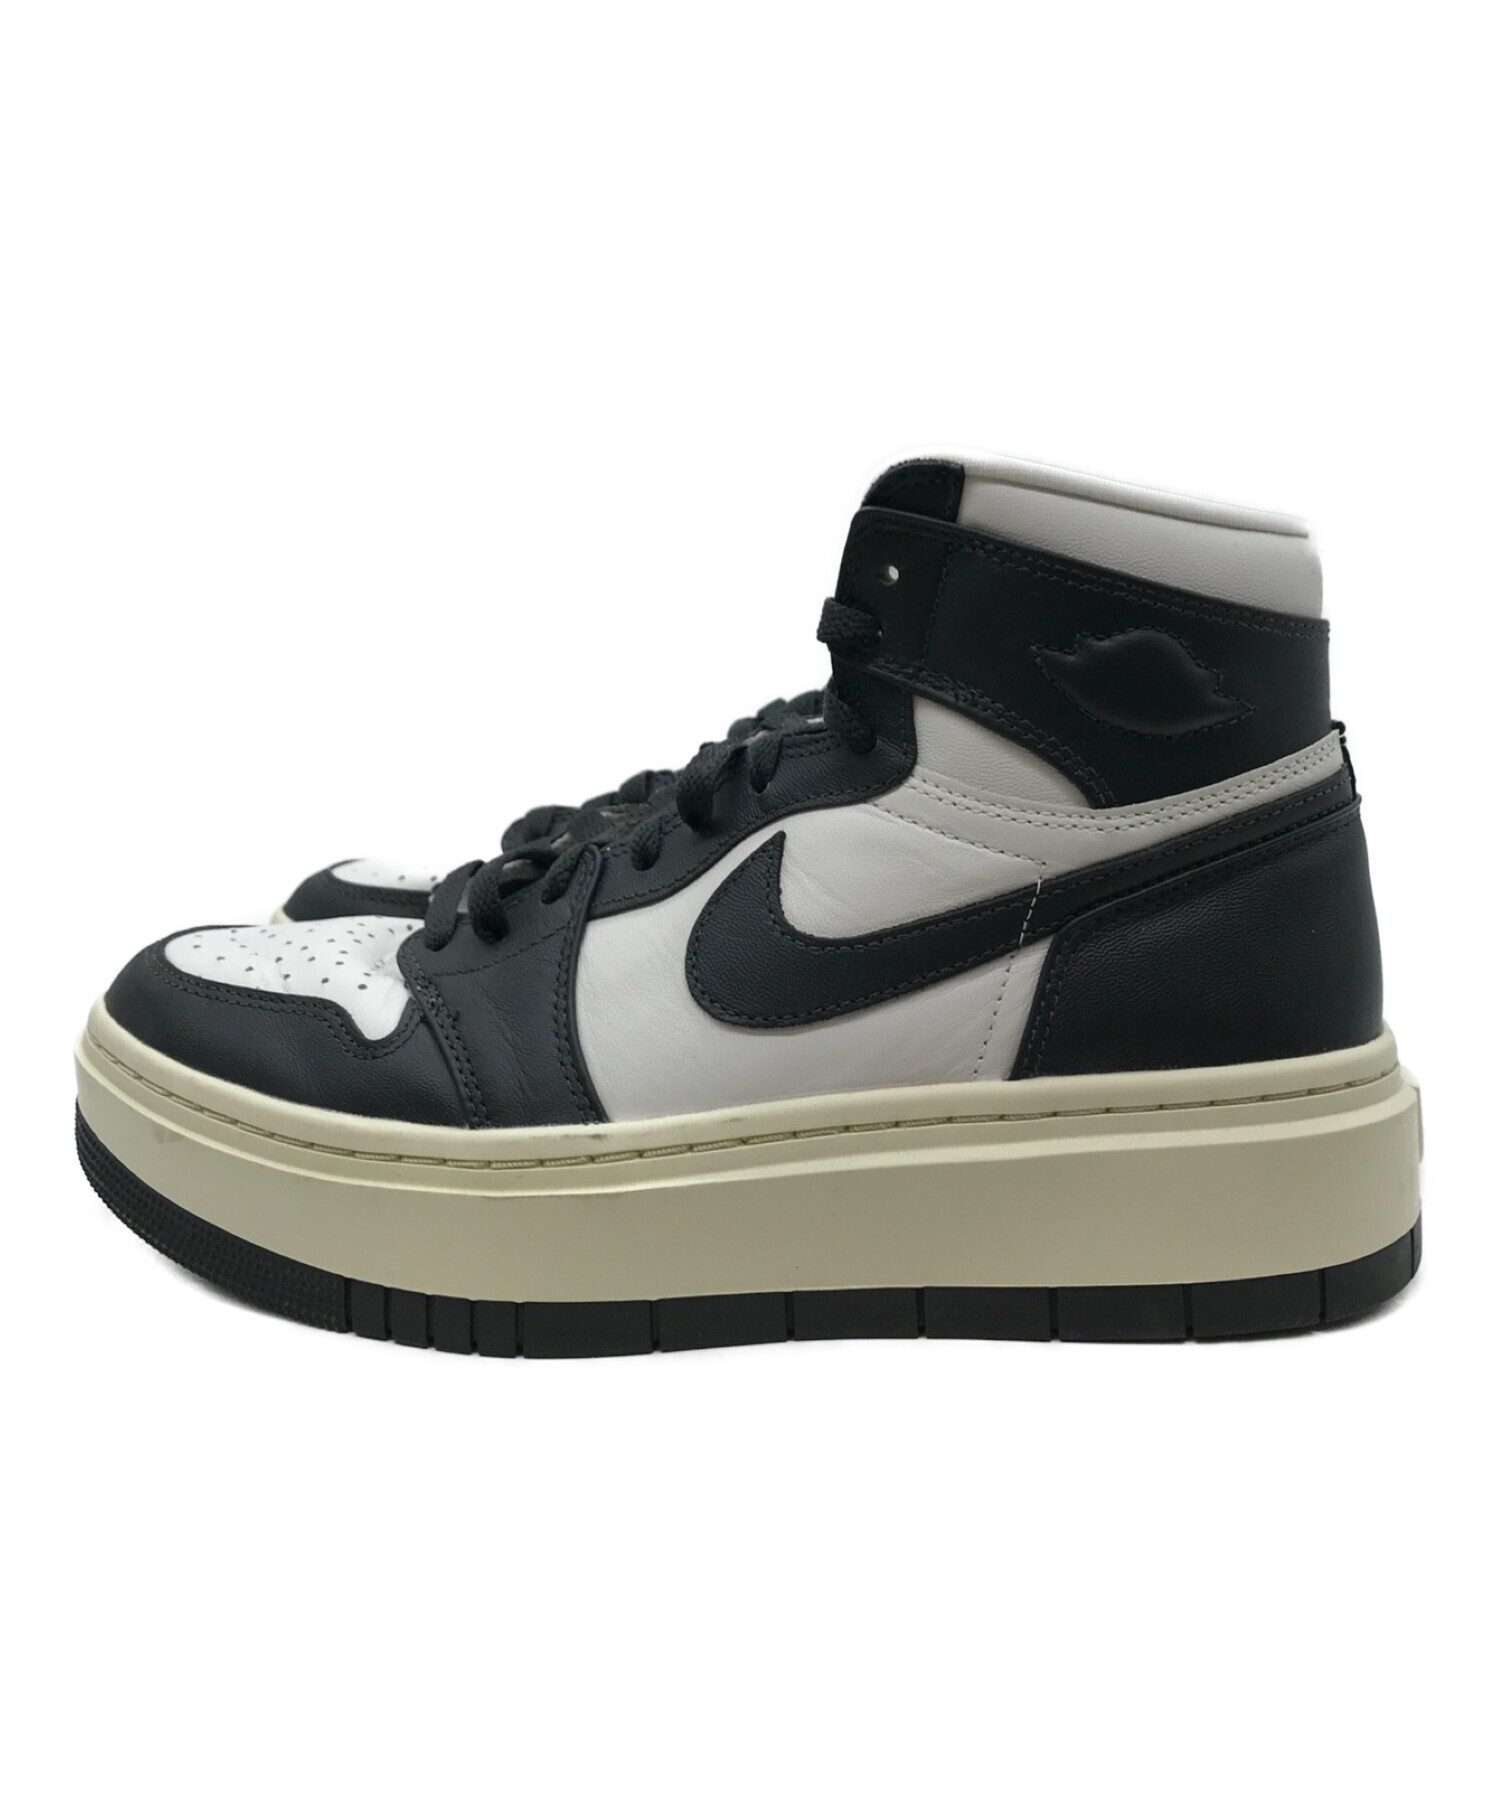 【新品未使用】Nike Air Jordan 1 High Elevateウィメンズサイズ-28cm